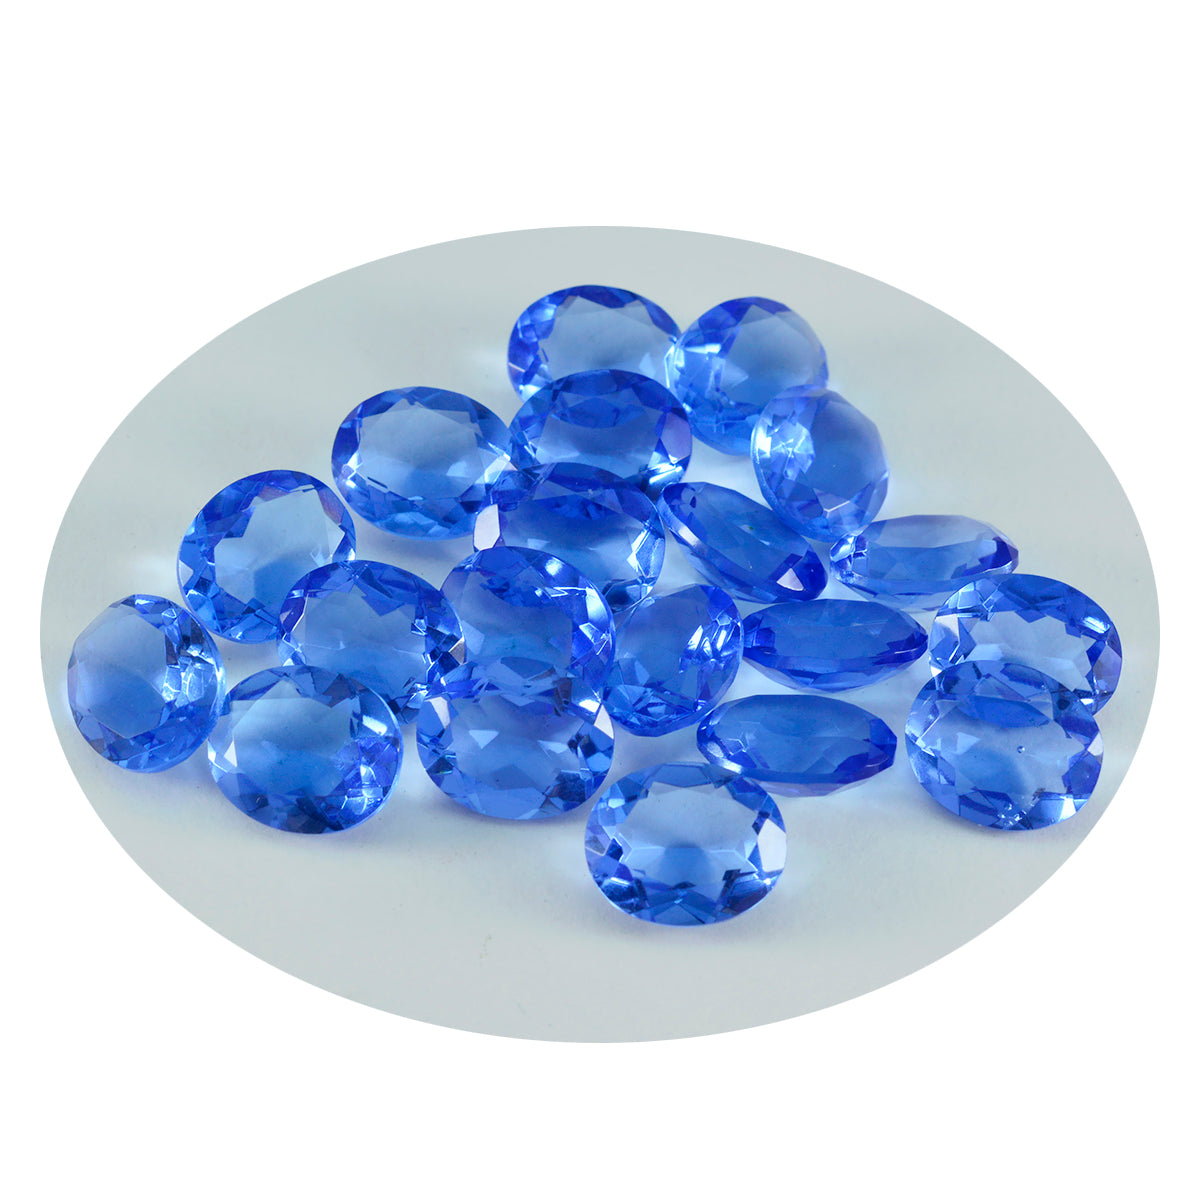 riyogems 1шт синий сапфир cz ограненный 5x7 мм овальная форма A+ качество свободный драгоценный камень